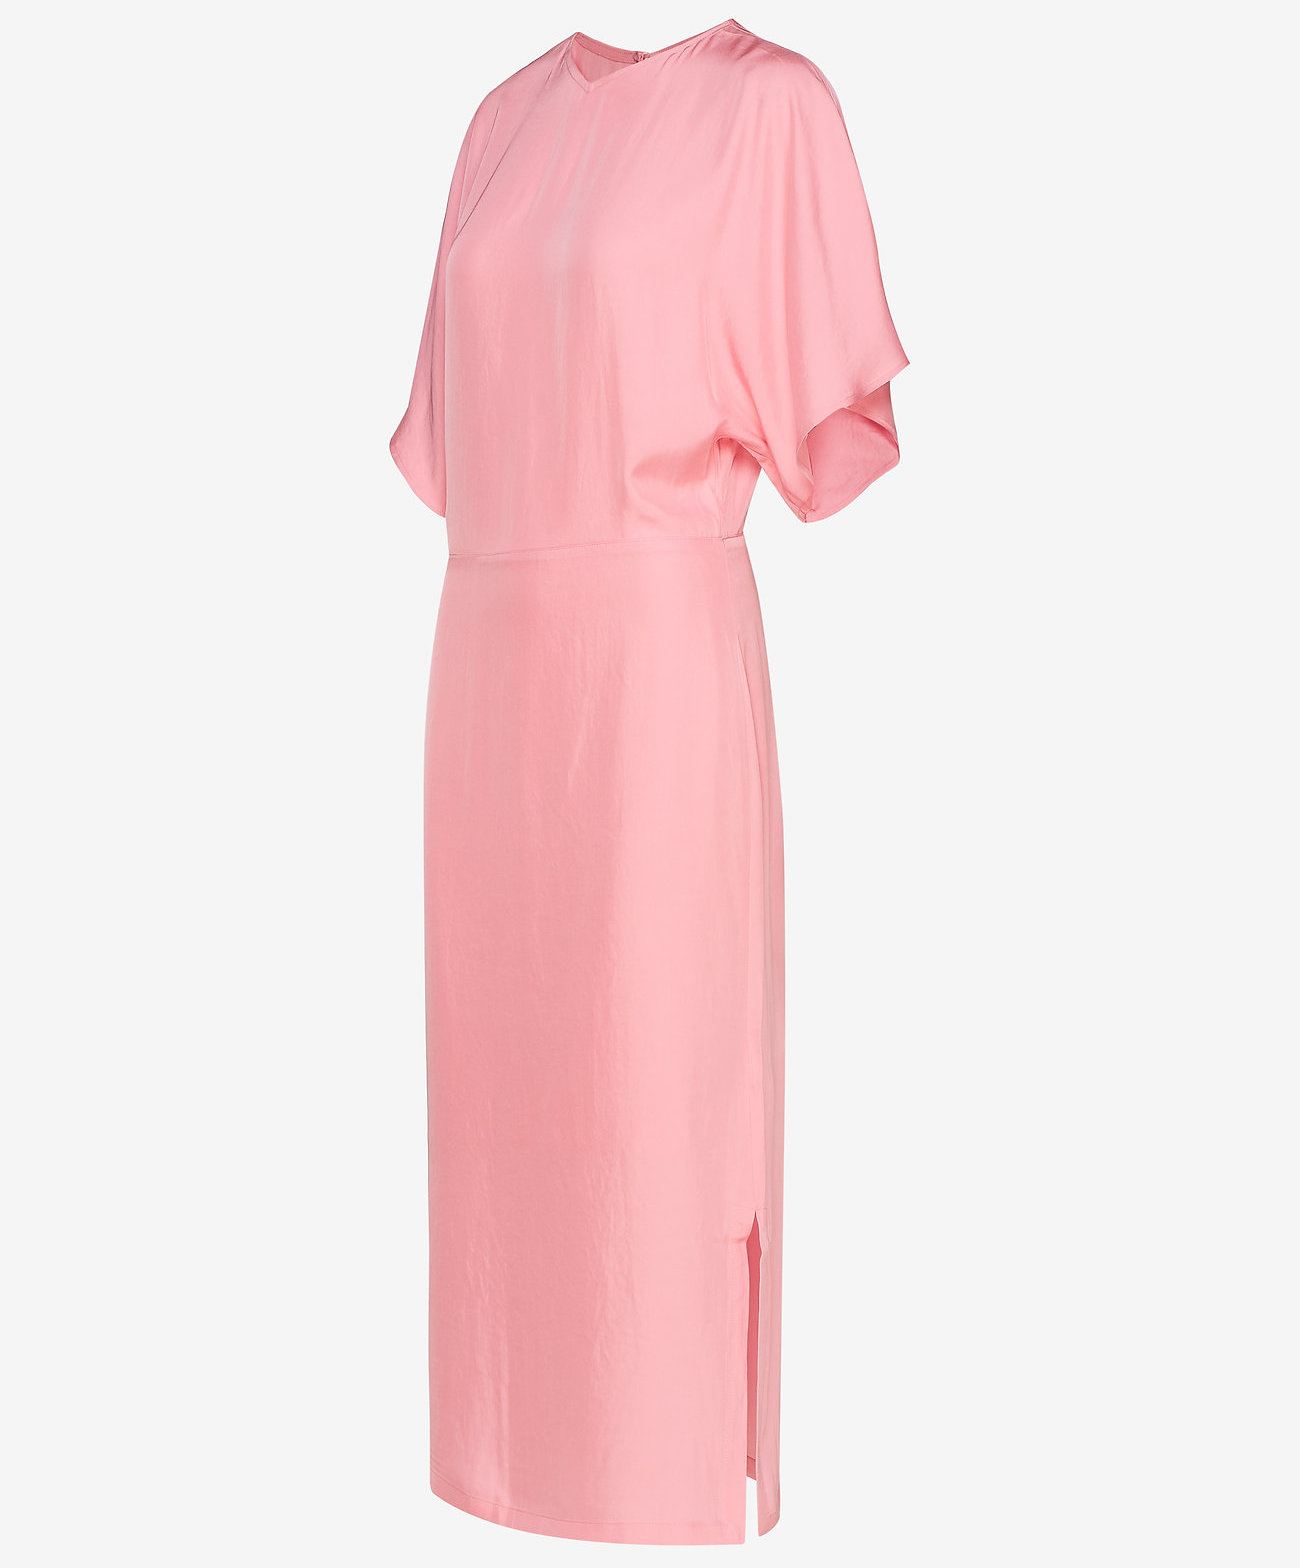 Filippa K Kimono jurk, roze